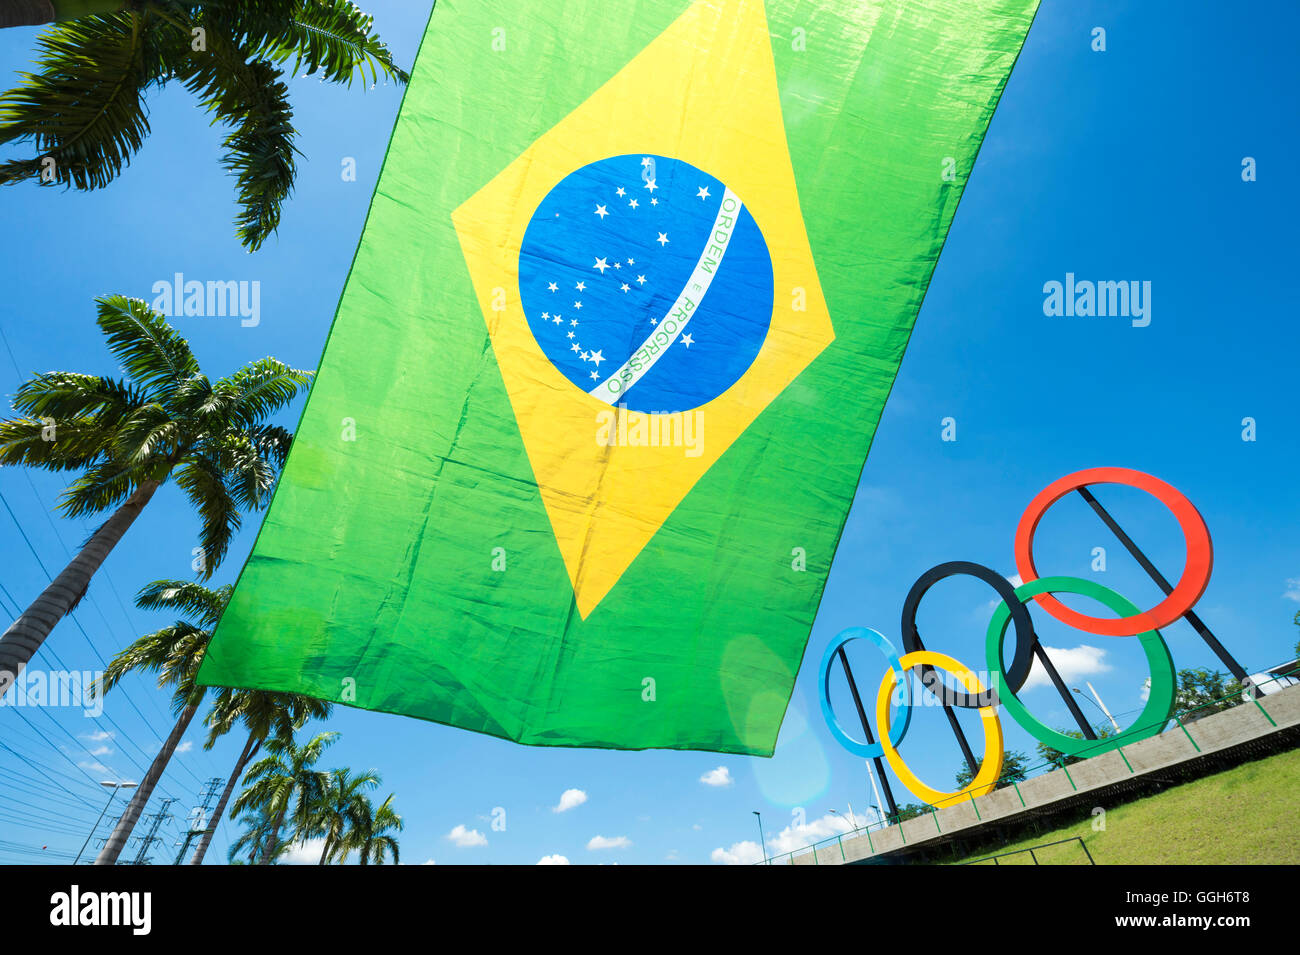 RIO DE JANEIRO - le 18 mars 2016 : un drapeau du Brésil s'arrête en face de l'affichage des anneaux olympiques dans la région de Parque Madureira Park. Banque D'Images